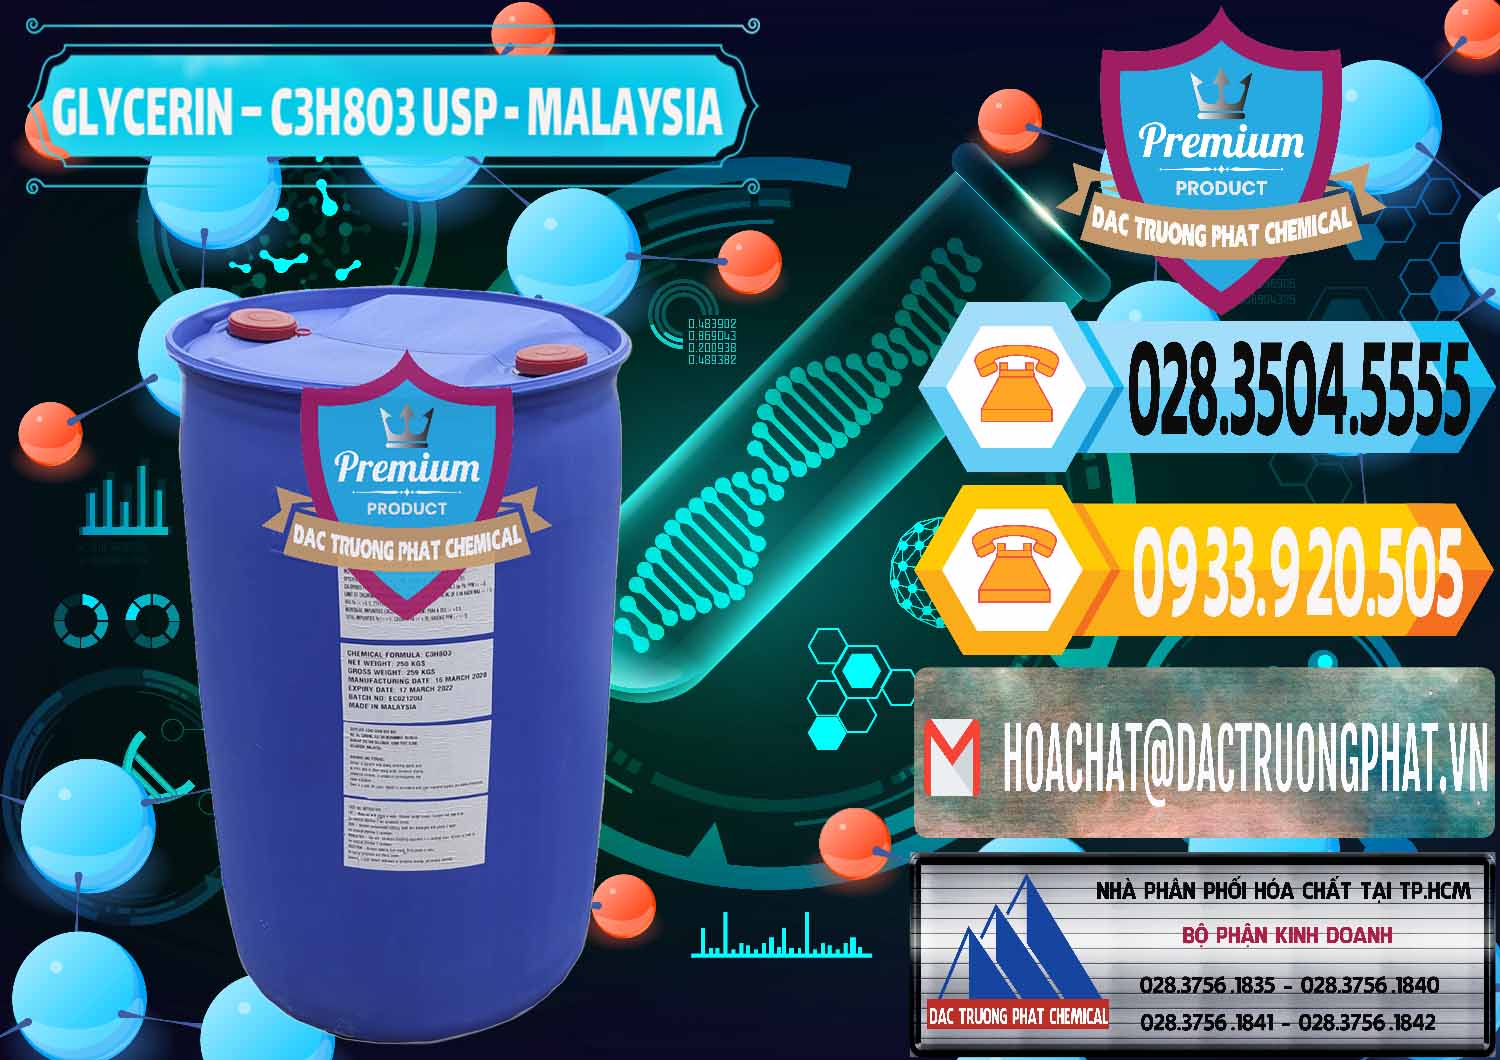 Đơn vị chuyên nhập khẩu và bán Glycerin – C3H8O3 USP Malaysia - 0233 - Cty chuyên cung cấp _ bán hóa chất tại TP.HCM - hoachattayrua.net